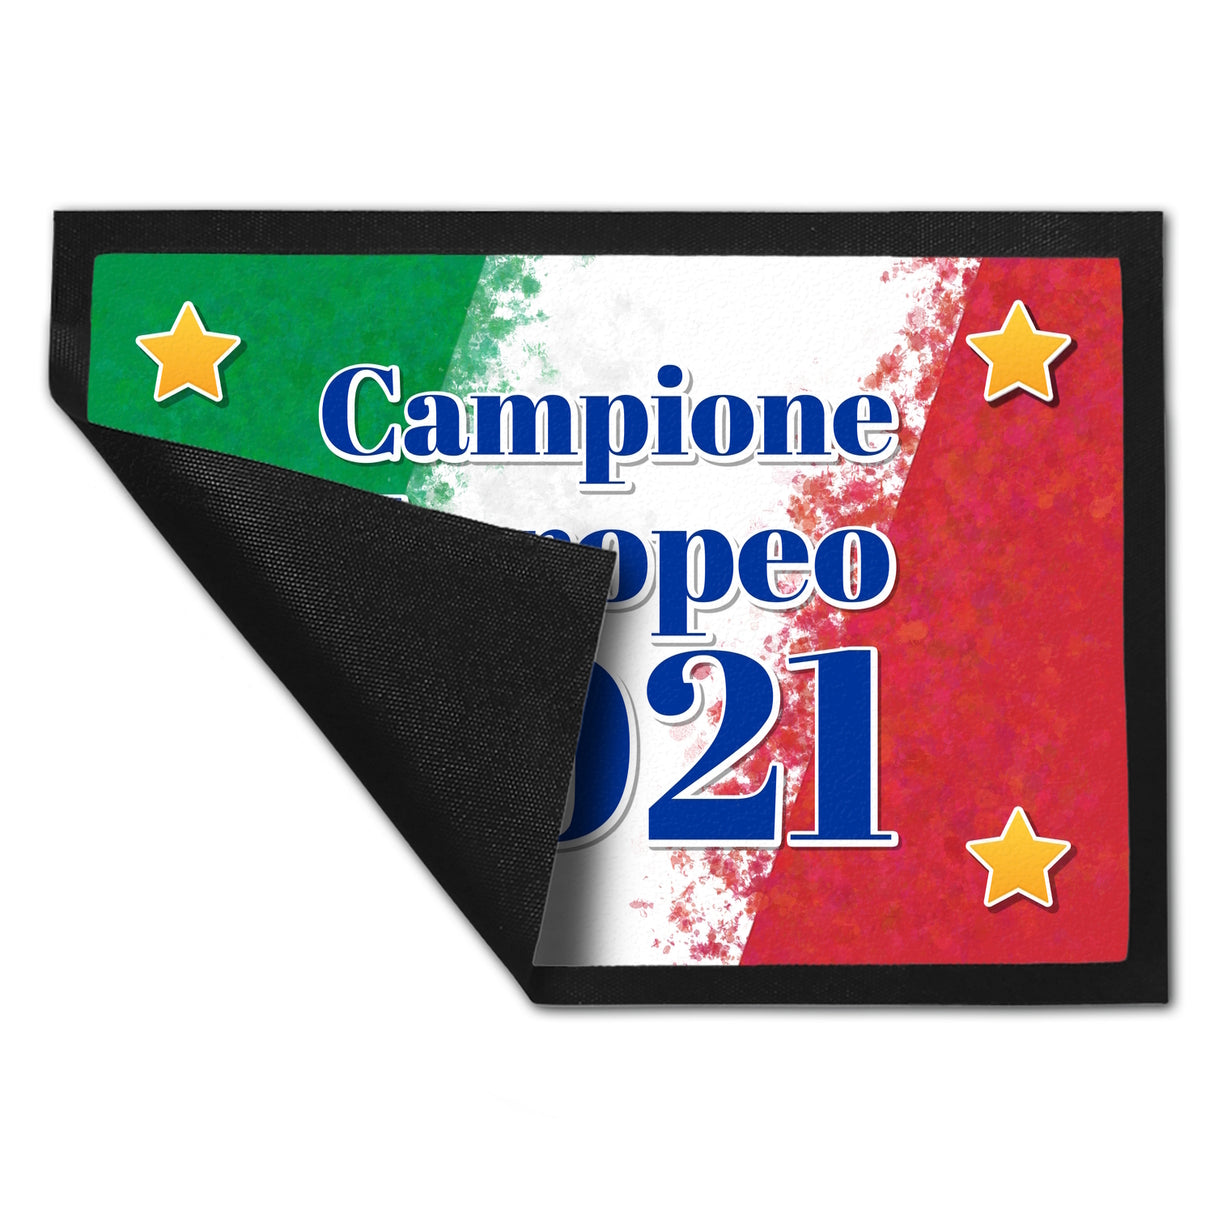 Fußmatte italienisches Motiv und Spruch - Campione Europeo 2021 Italien Flagge